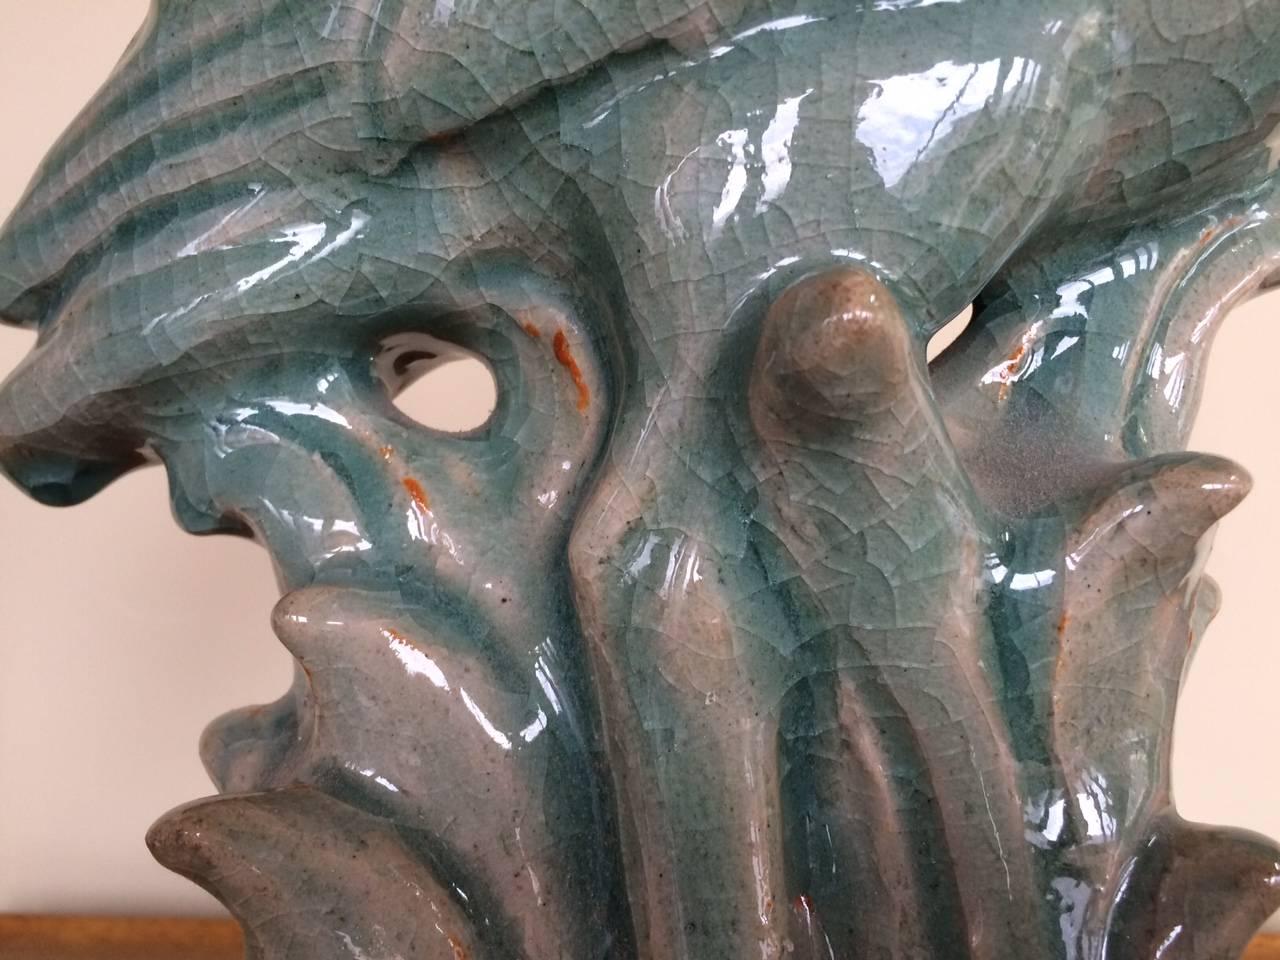 Inhabituelle sculpture en céramique émaillée Royal Copenhagen, représentant un héron bleu. Signé et daté 1938. Glaçage craquelé, lourd et assez grand. Notez une imperfection - un éclat - voir photo.